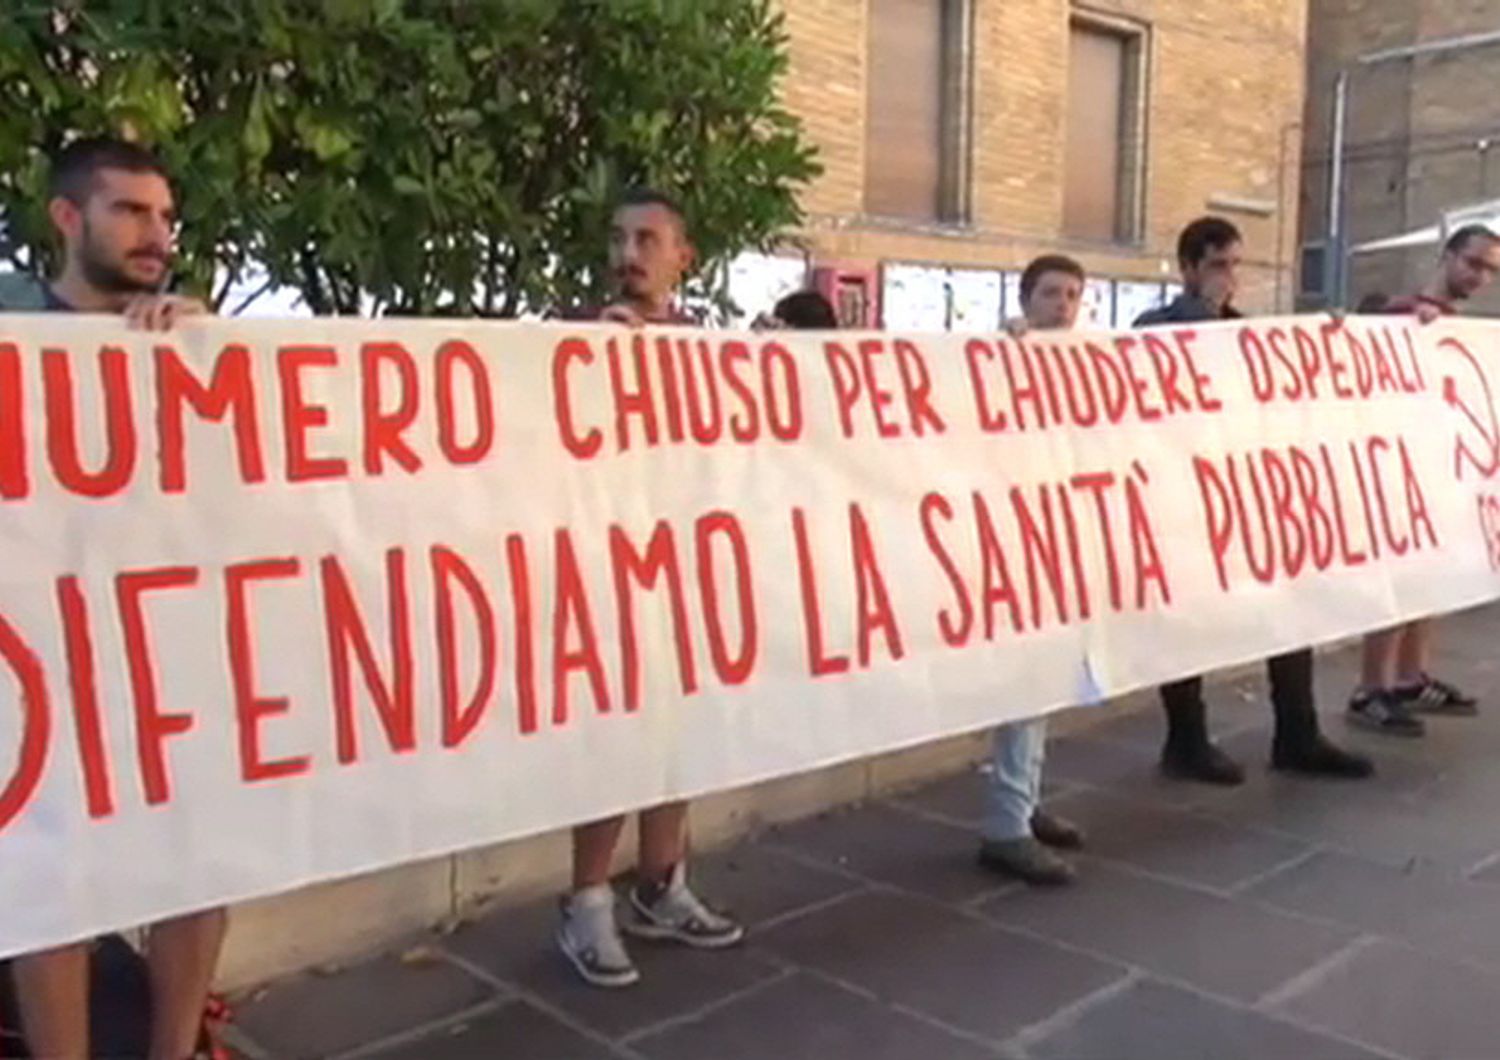 Studenti protestano contro il numero chiuso, sit-in alla Sapienza